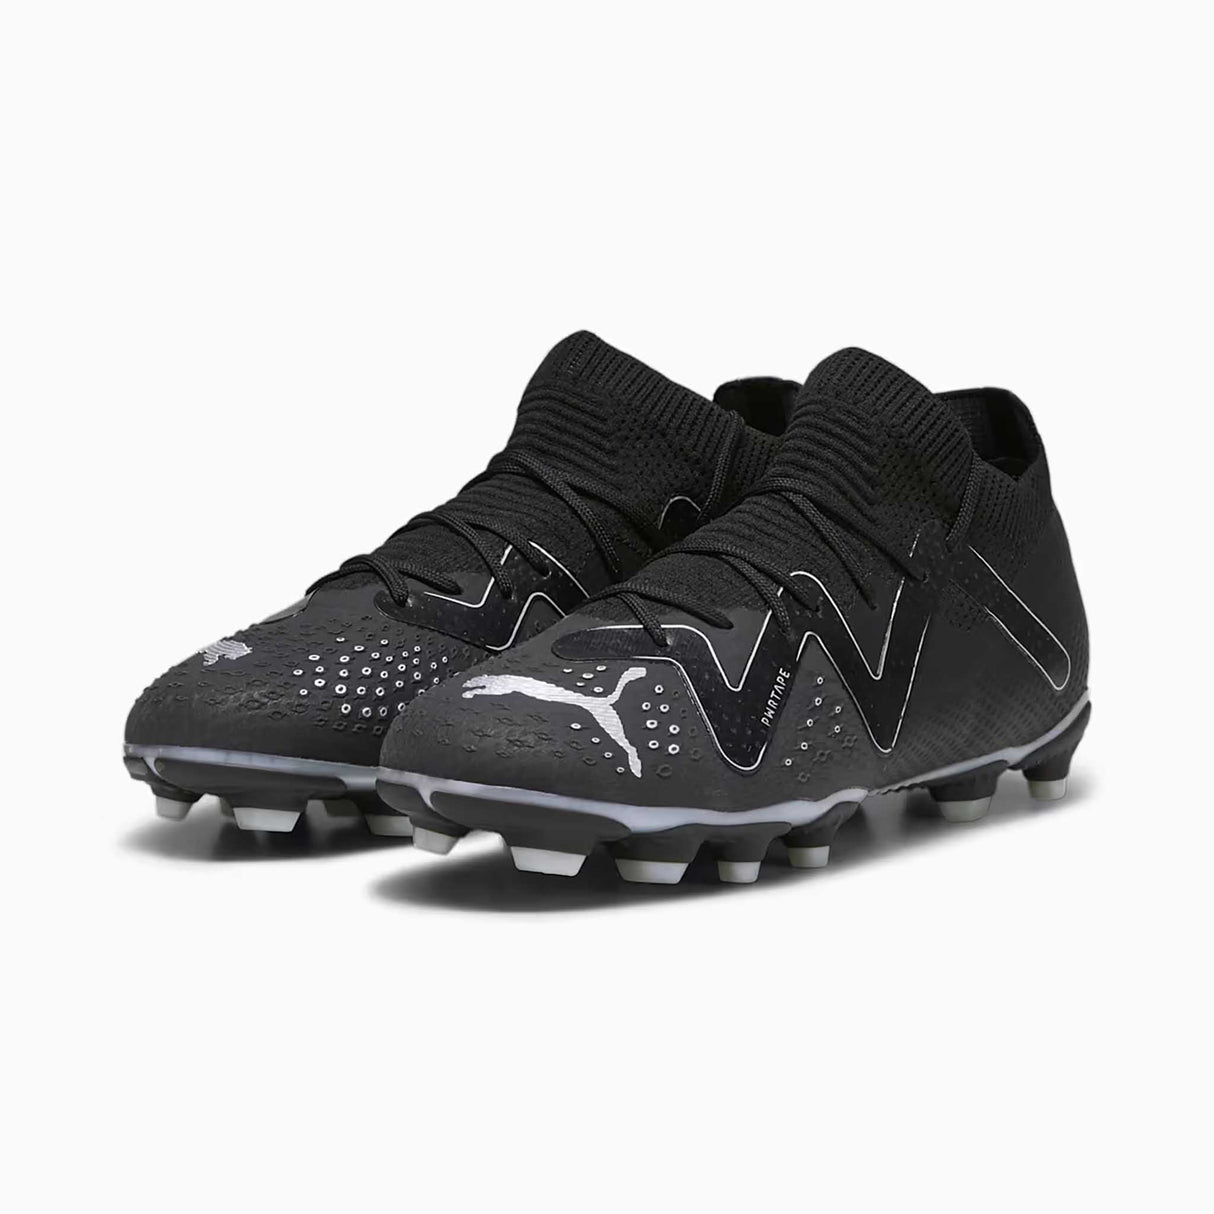 Puma Future Pro FG/AG chaussures de soccer à crampons enfant paire - puma black / puma silver